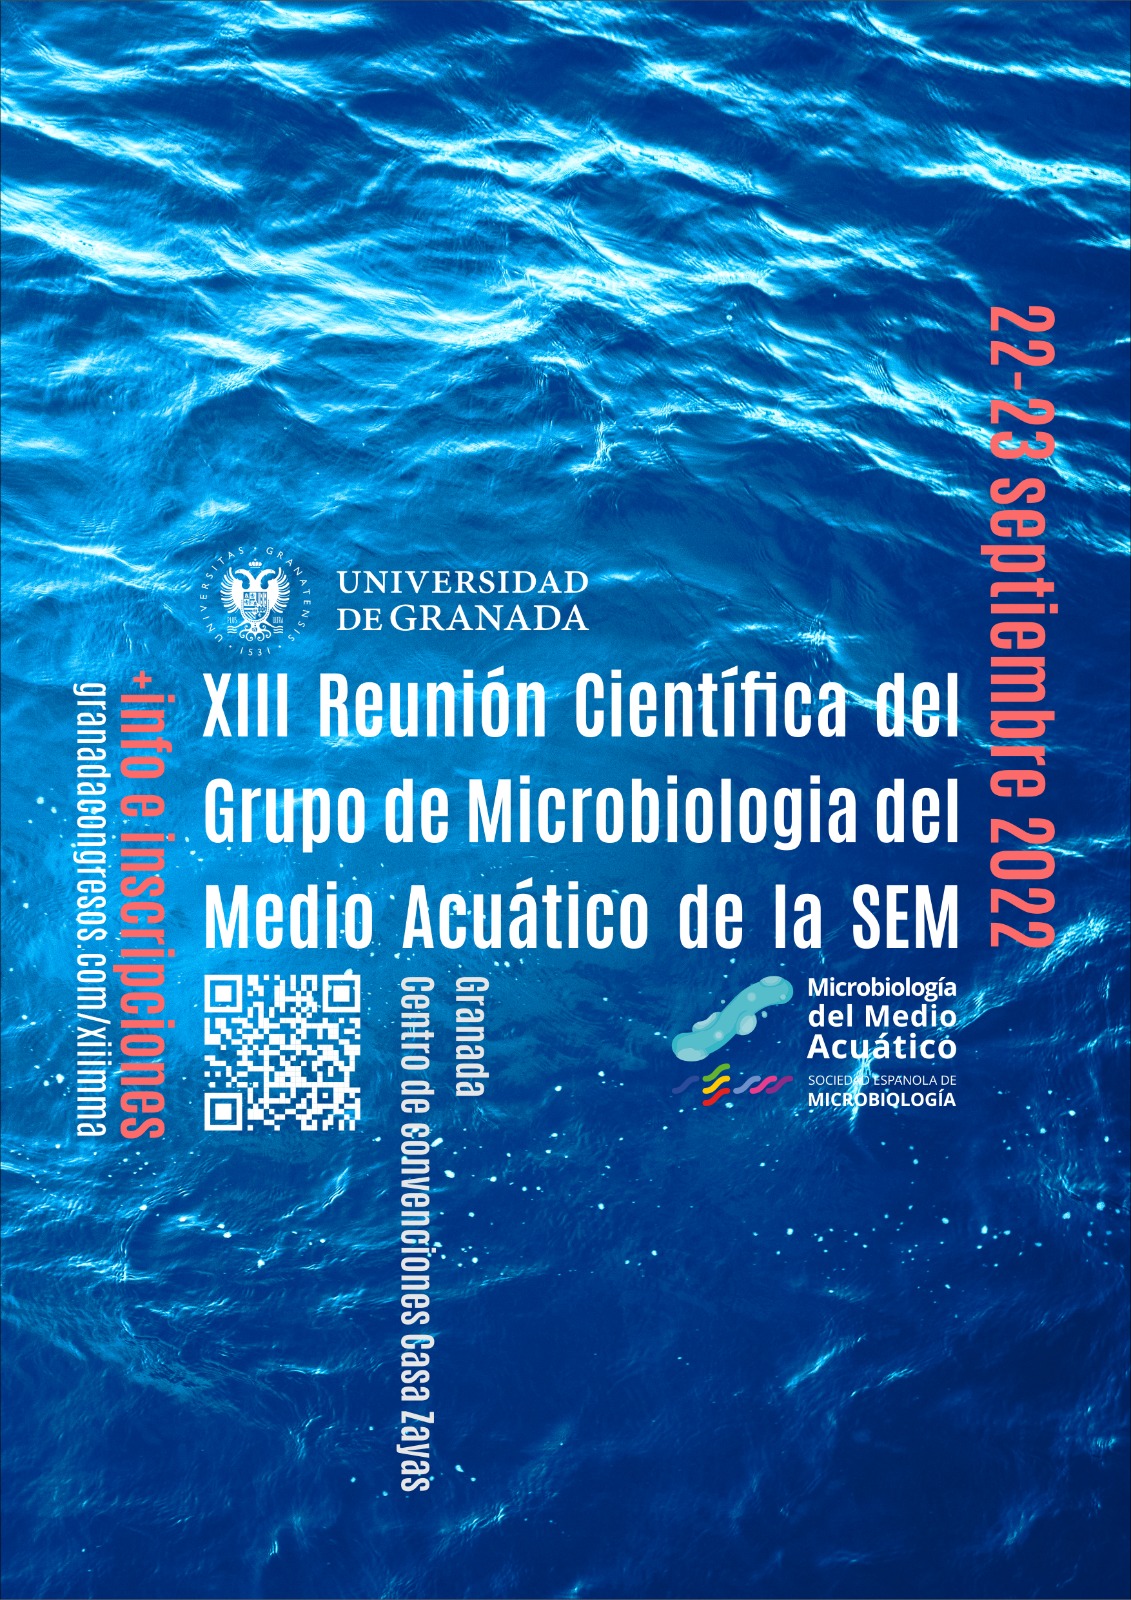 XIII Reunión Científica del Grupo de Microbiología del Medio Acuático de la SEM